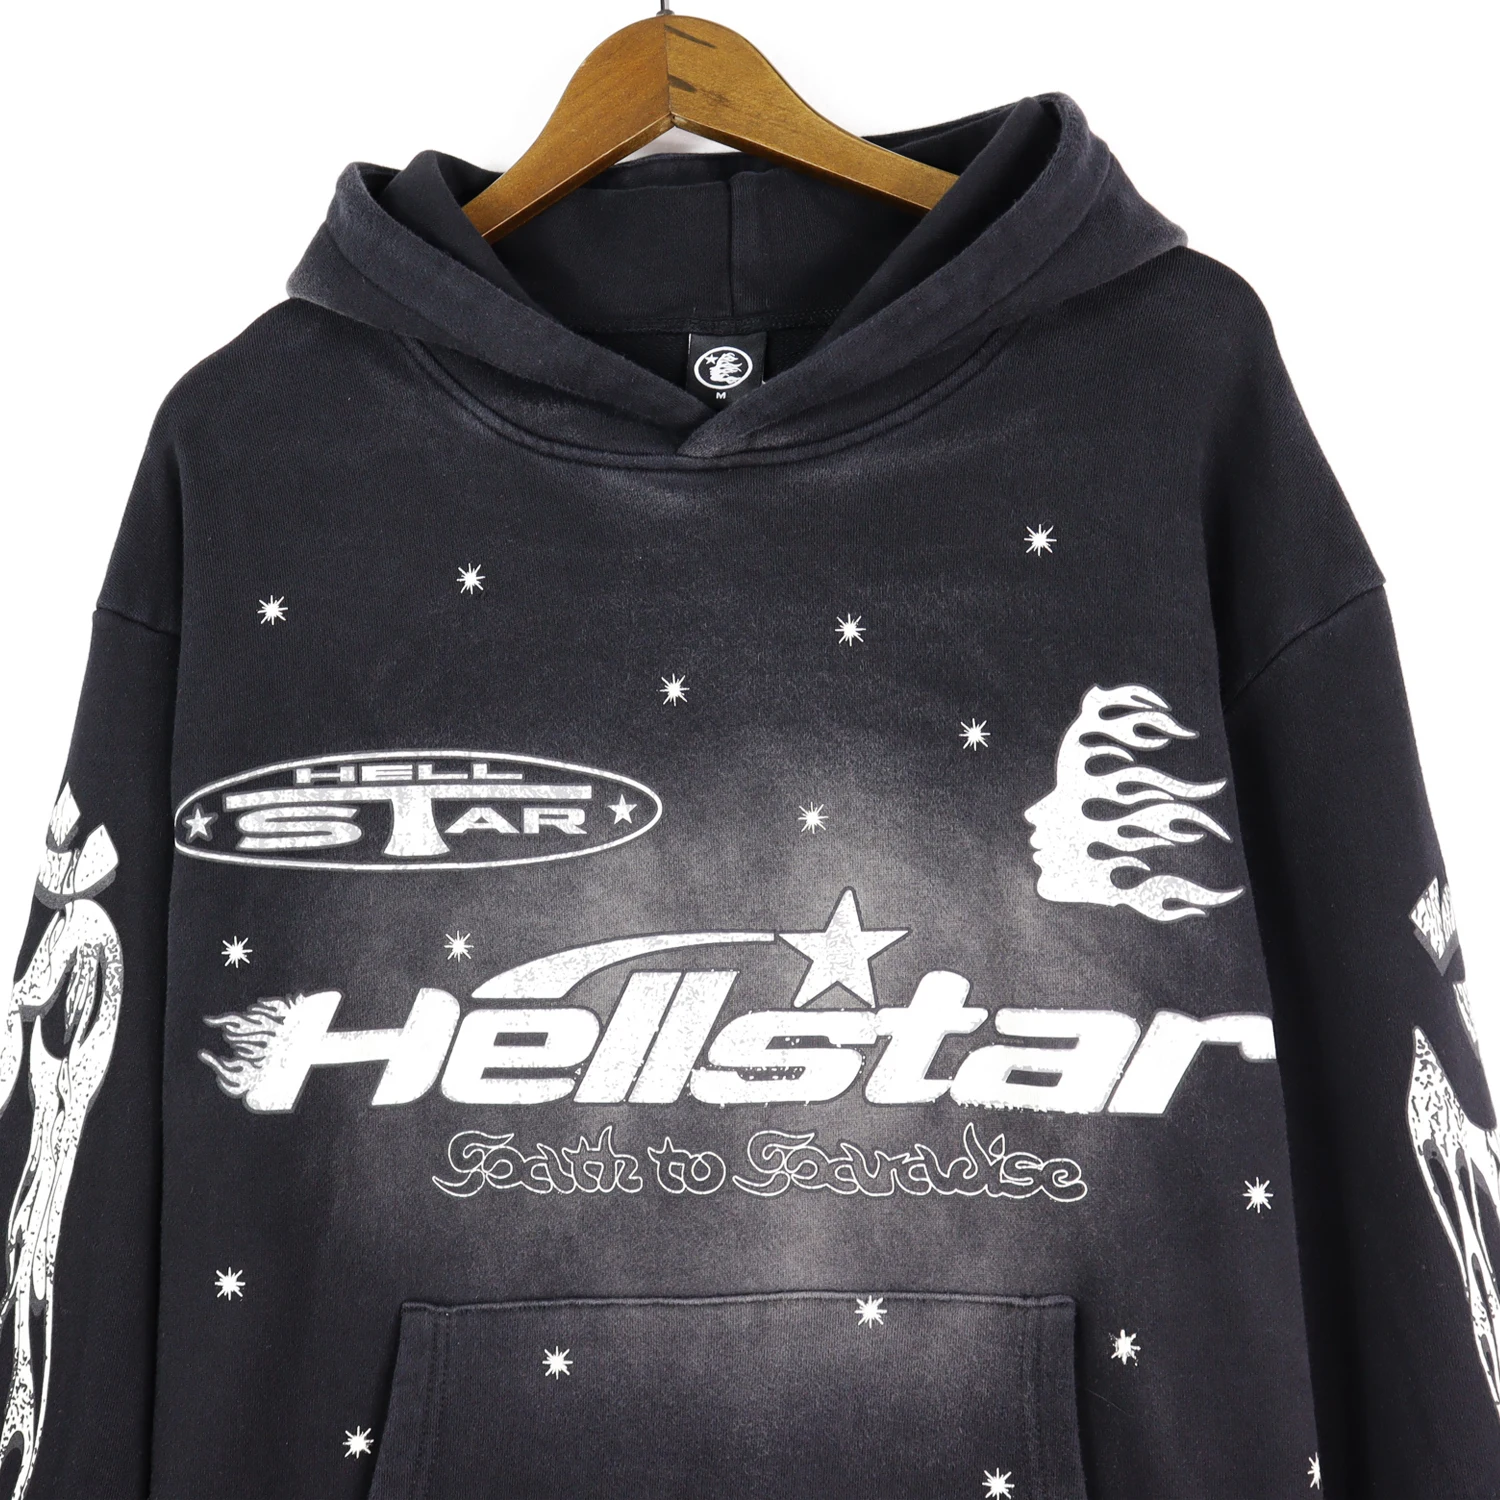 Hellstar Clothing Men's Hoodies & Sweatshirts Streetwear Trend ...